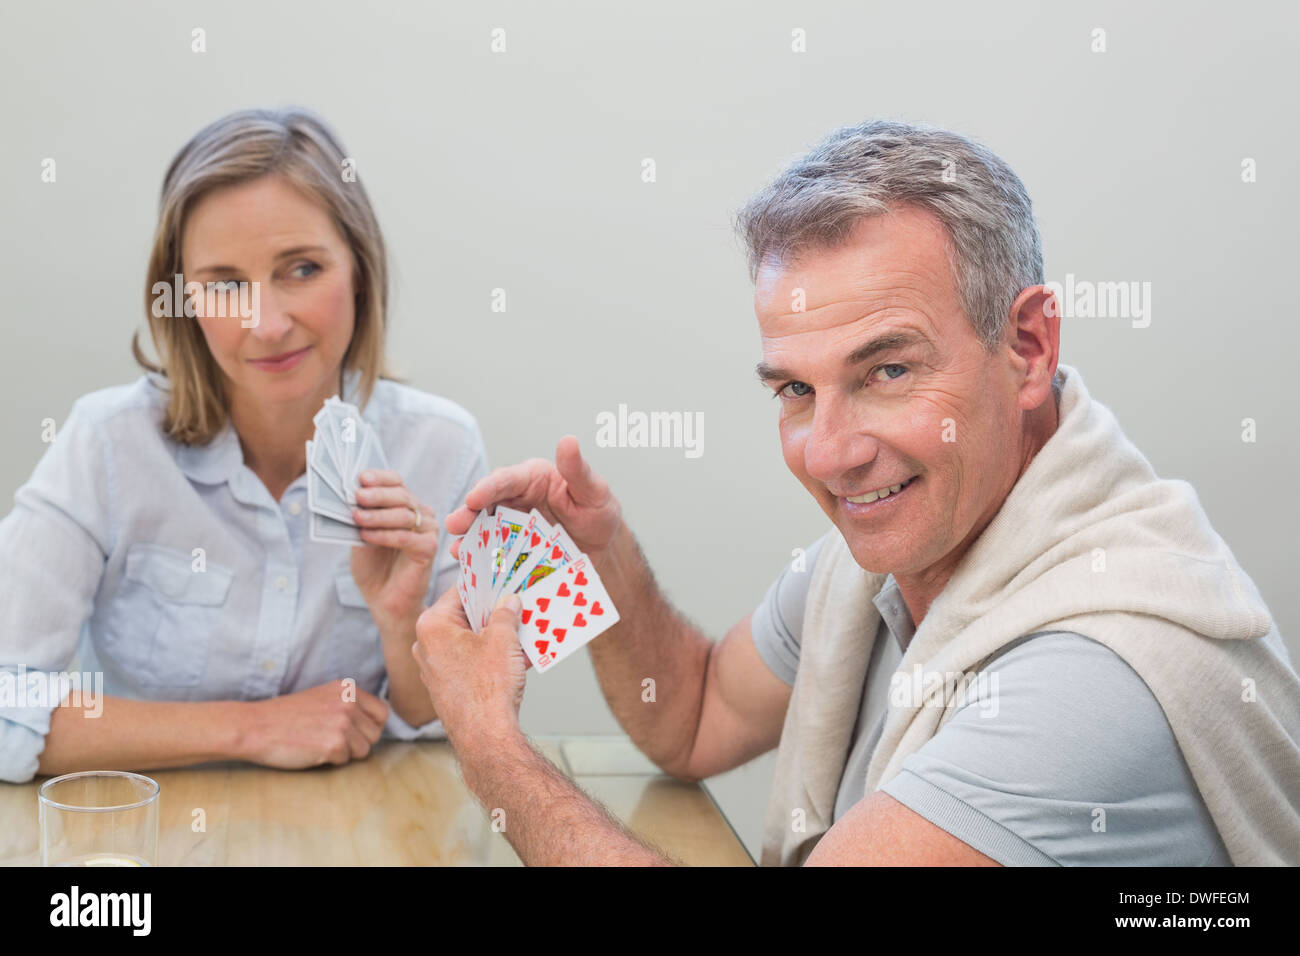 Deux cartes à jouer à la maison Banque D'Images